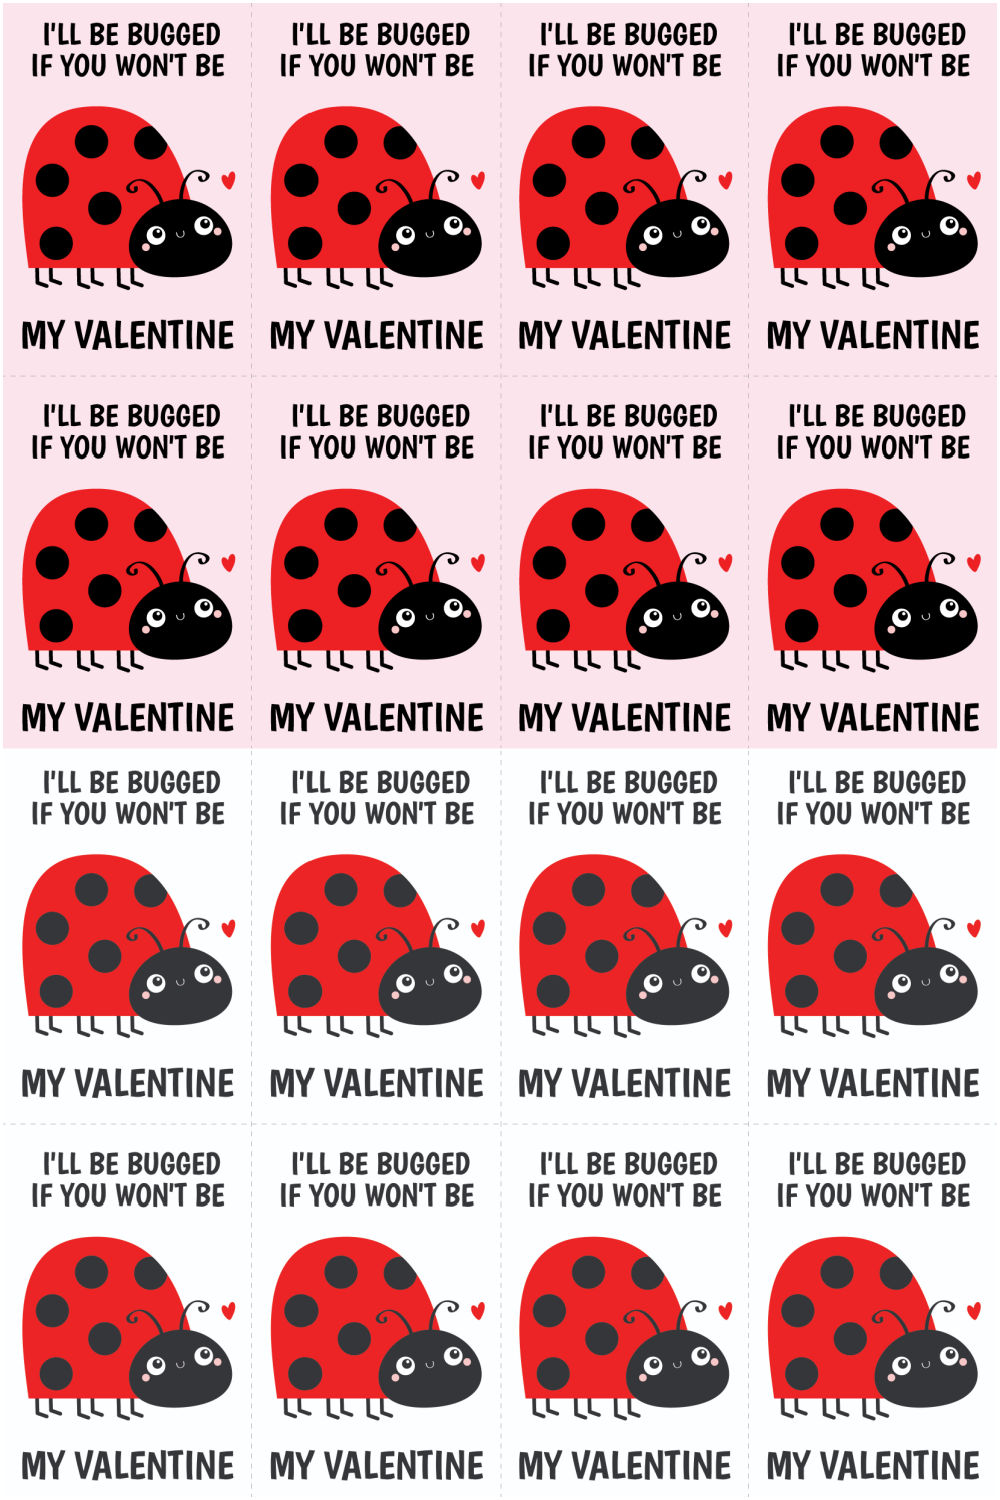 ladybug valentine images